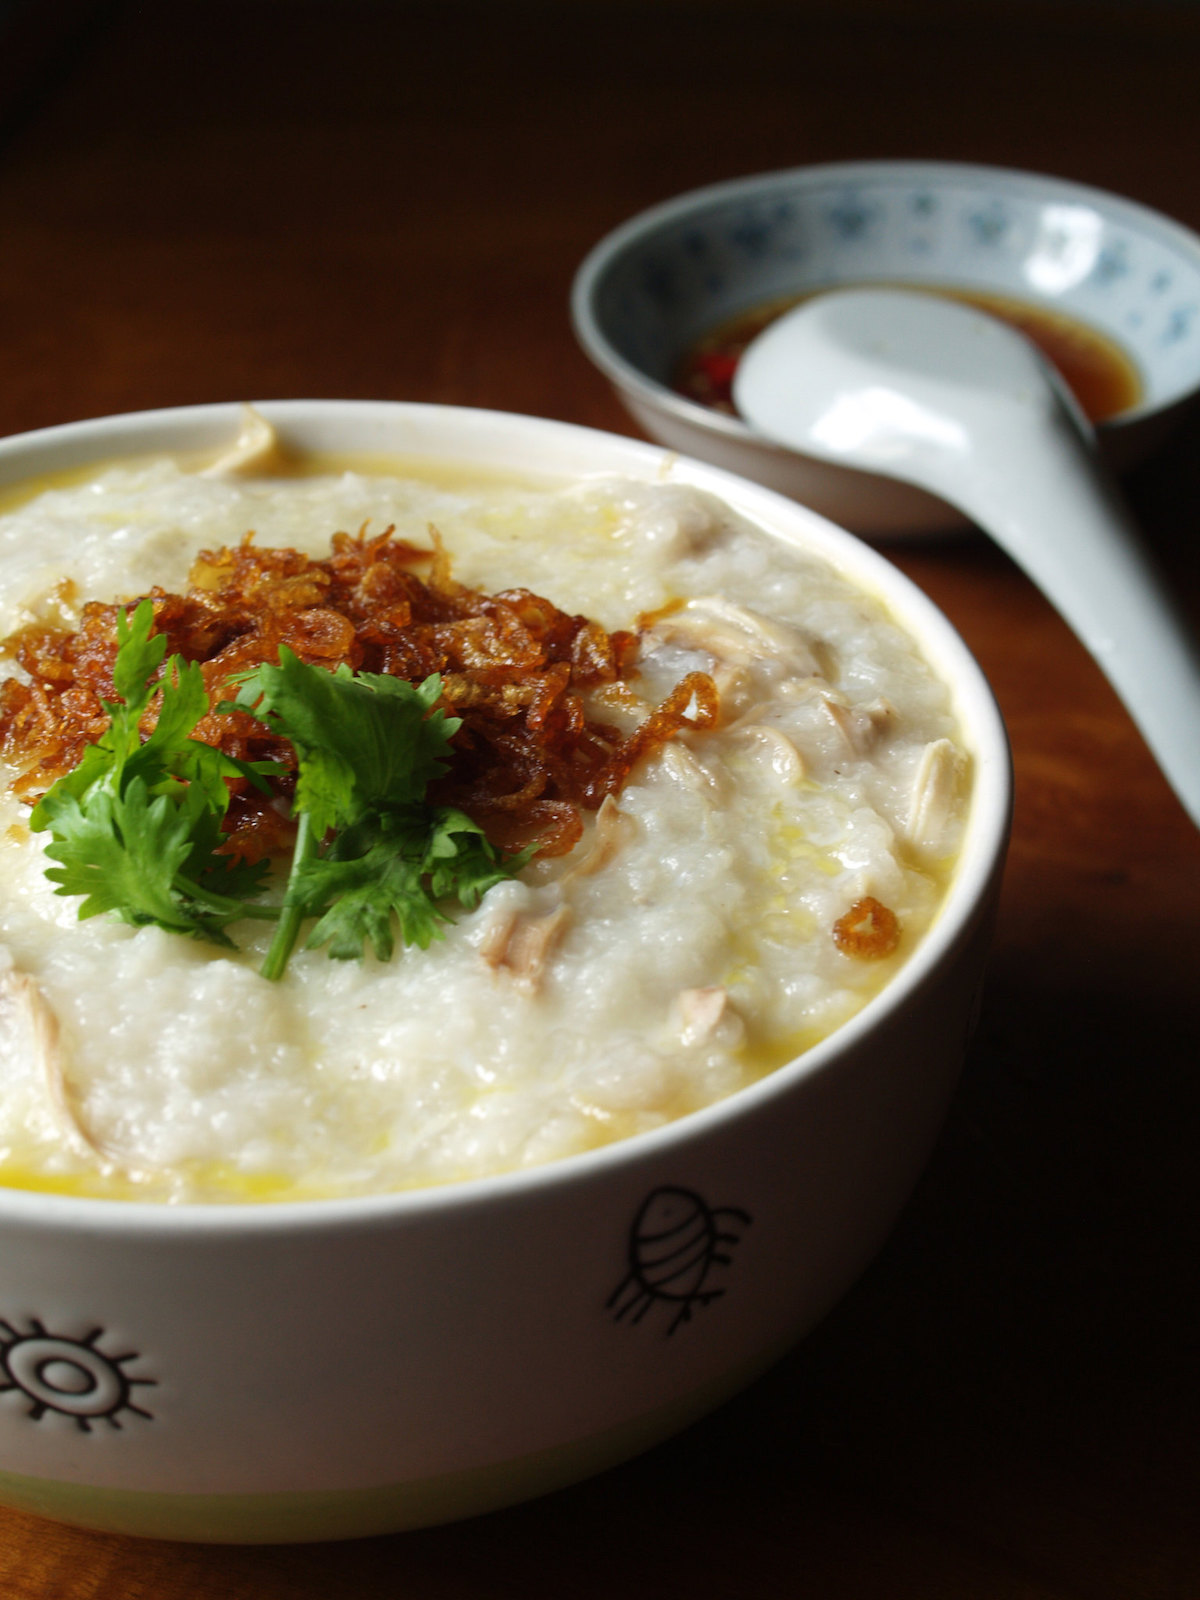 congee porridge